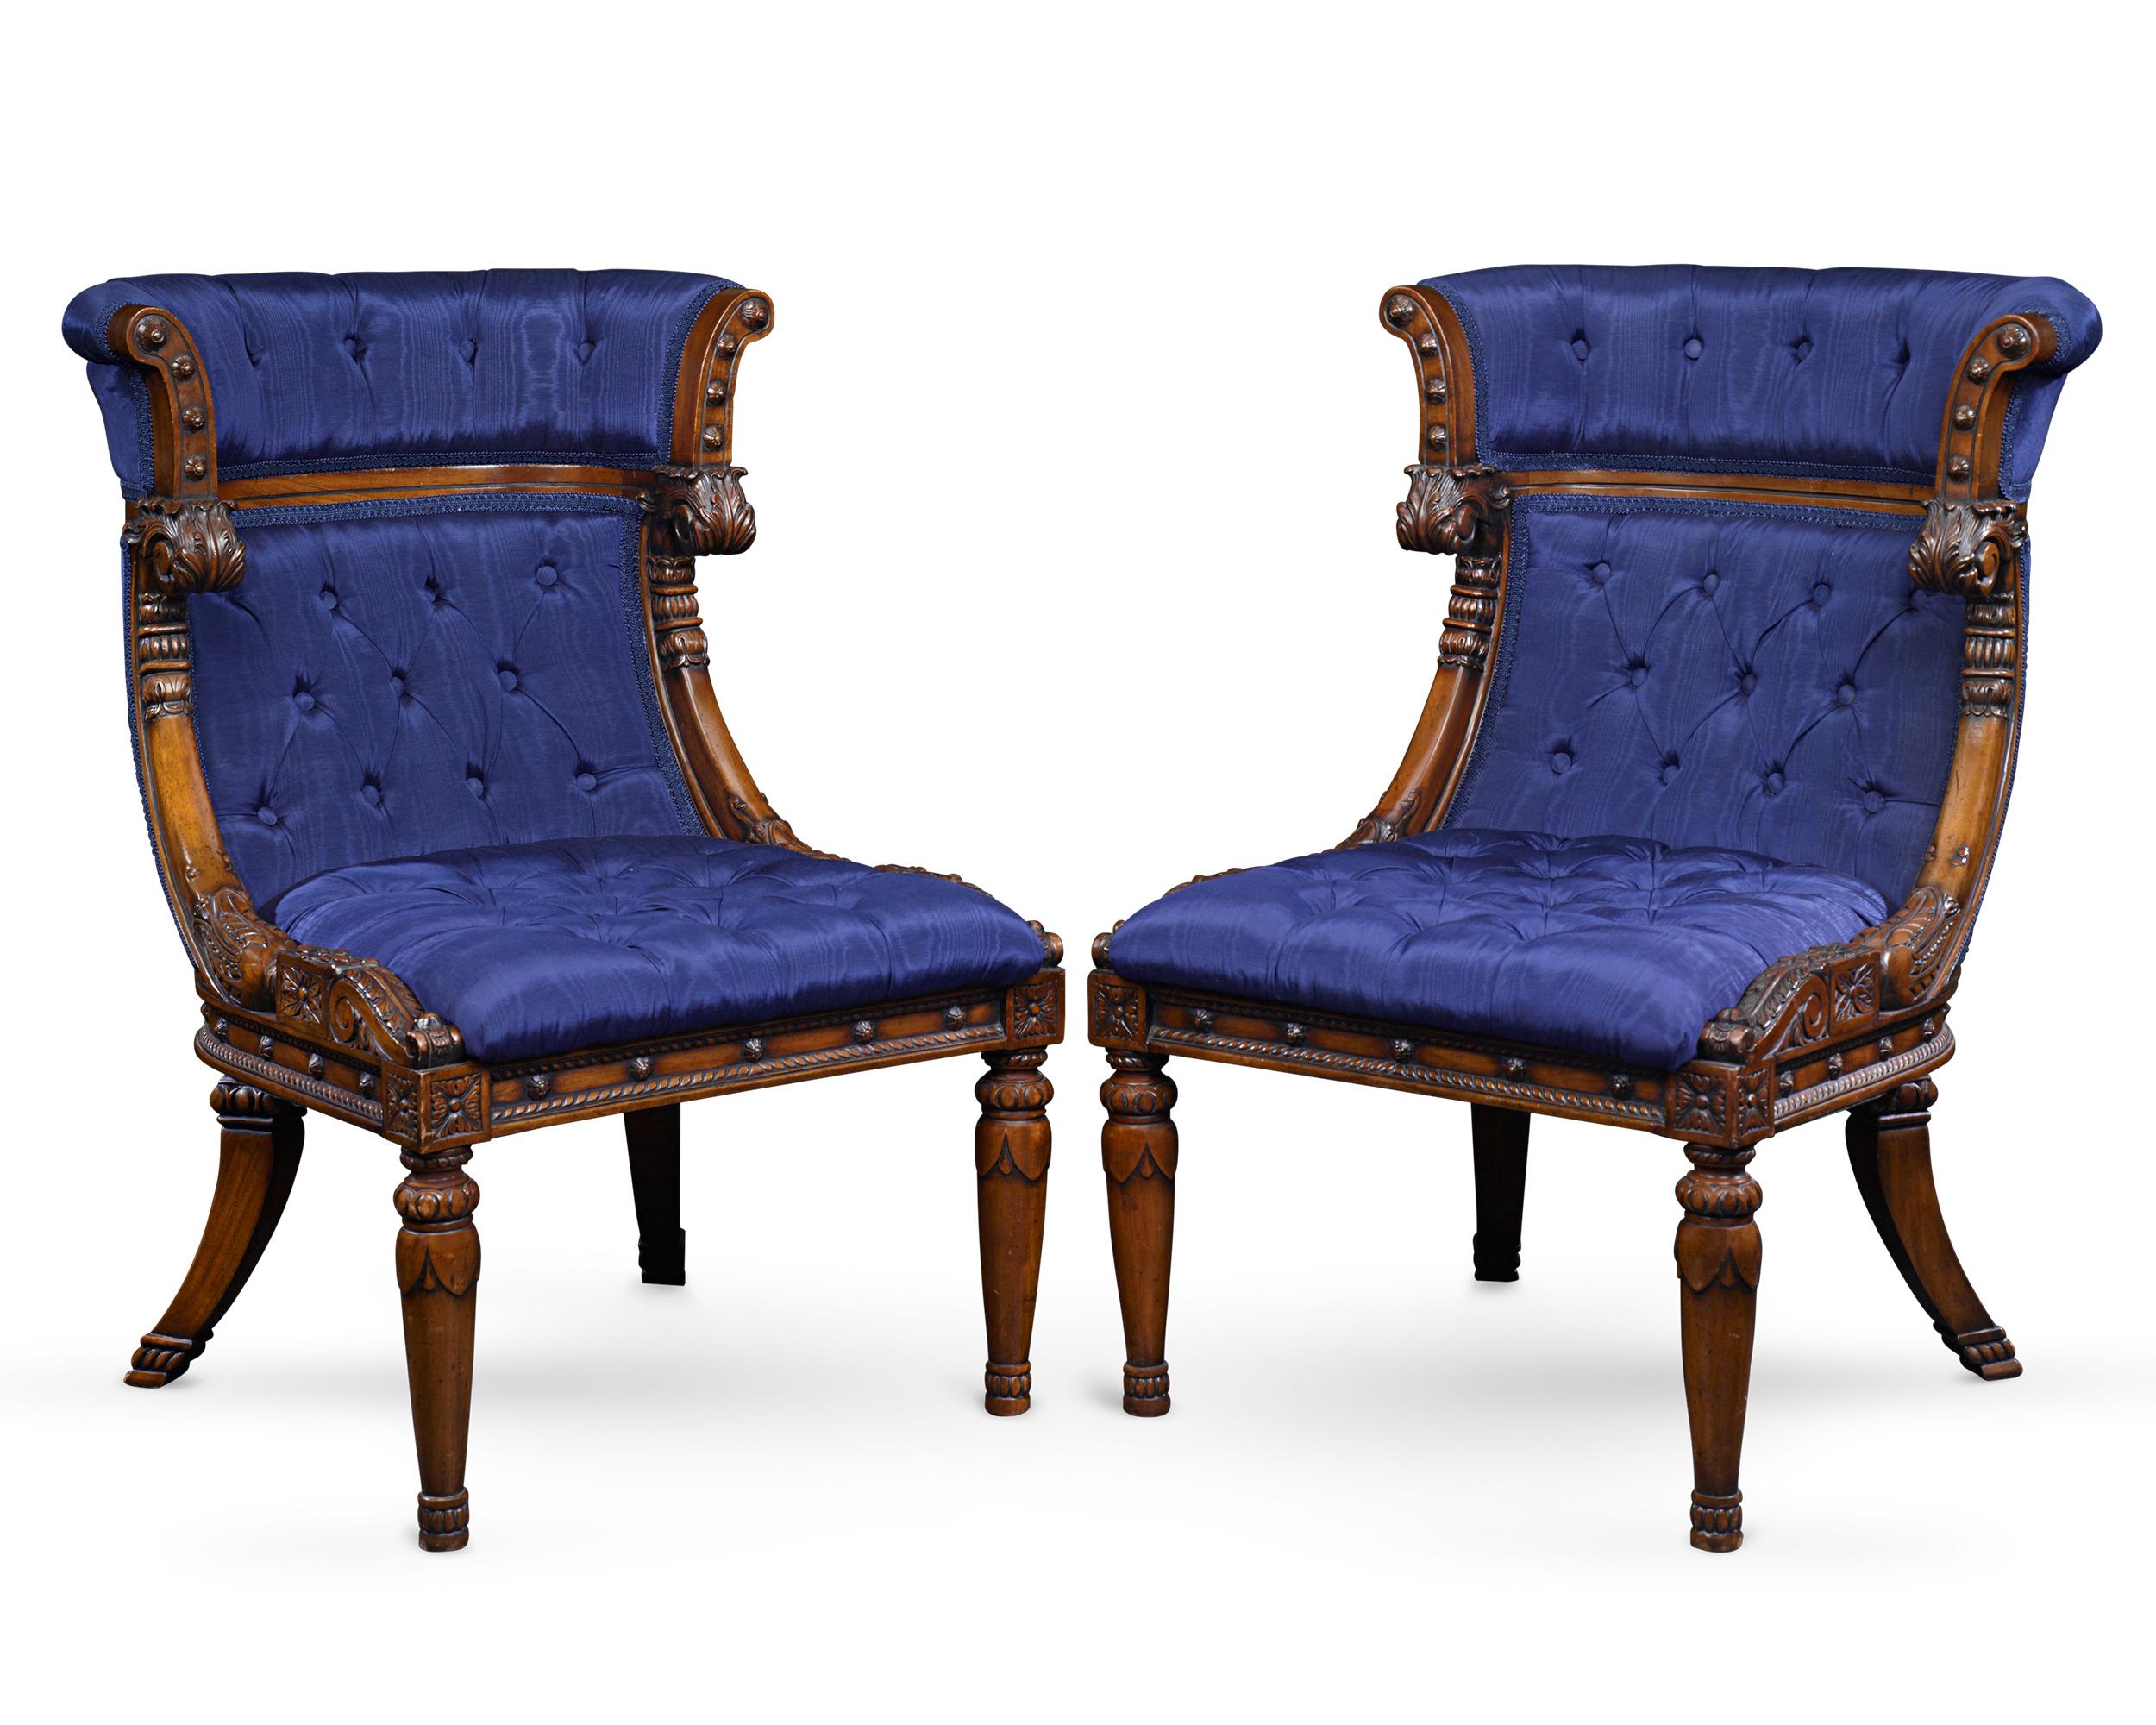 Das schöne Design dieses Paars französischer gepolsterter Bergère-Stühle ist ein Beispiel für die Kunstfertigkeit und Eleganz der Empire-Zeit. Die Stühle weisen perfekte Proportionen auf und sind mit königsblauen Polstern und geschnitztem Mahagoni